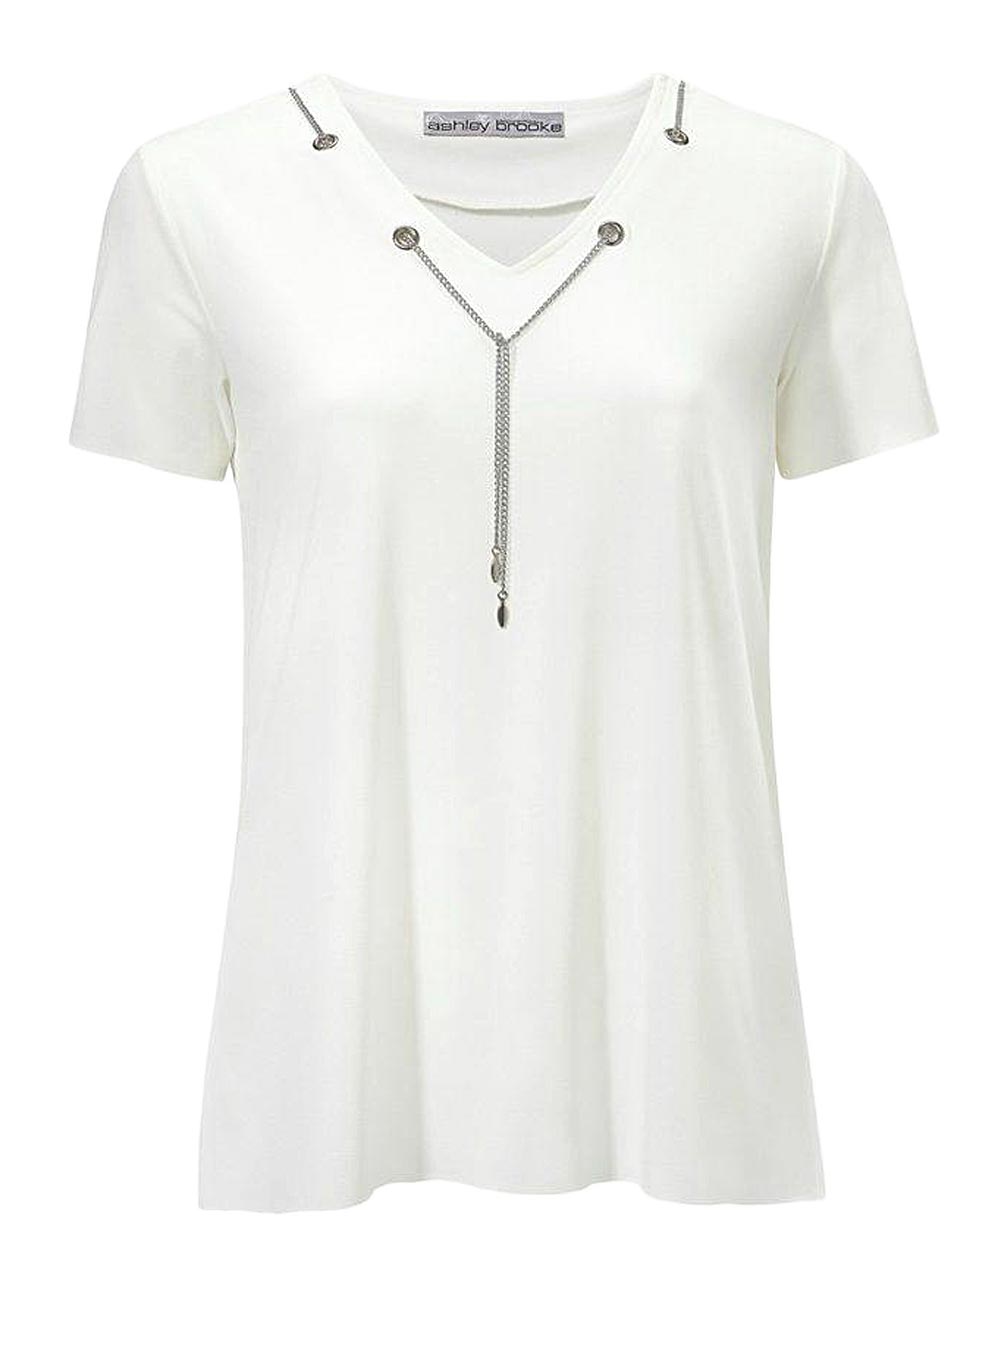 Ashley Brooke Damen Designer-Shirt mit Ketten, offwhite